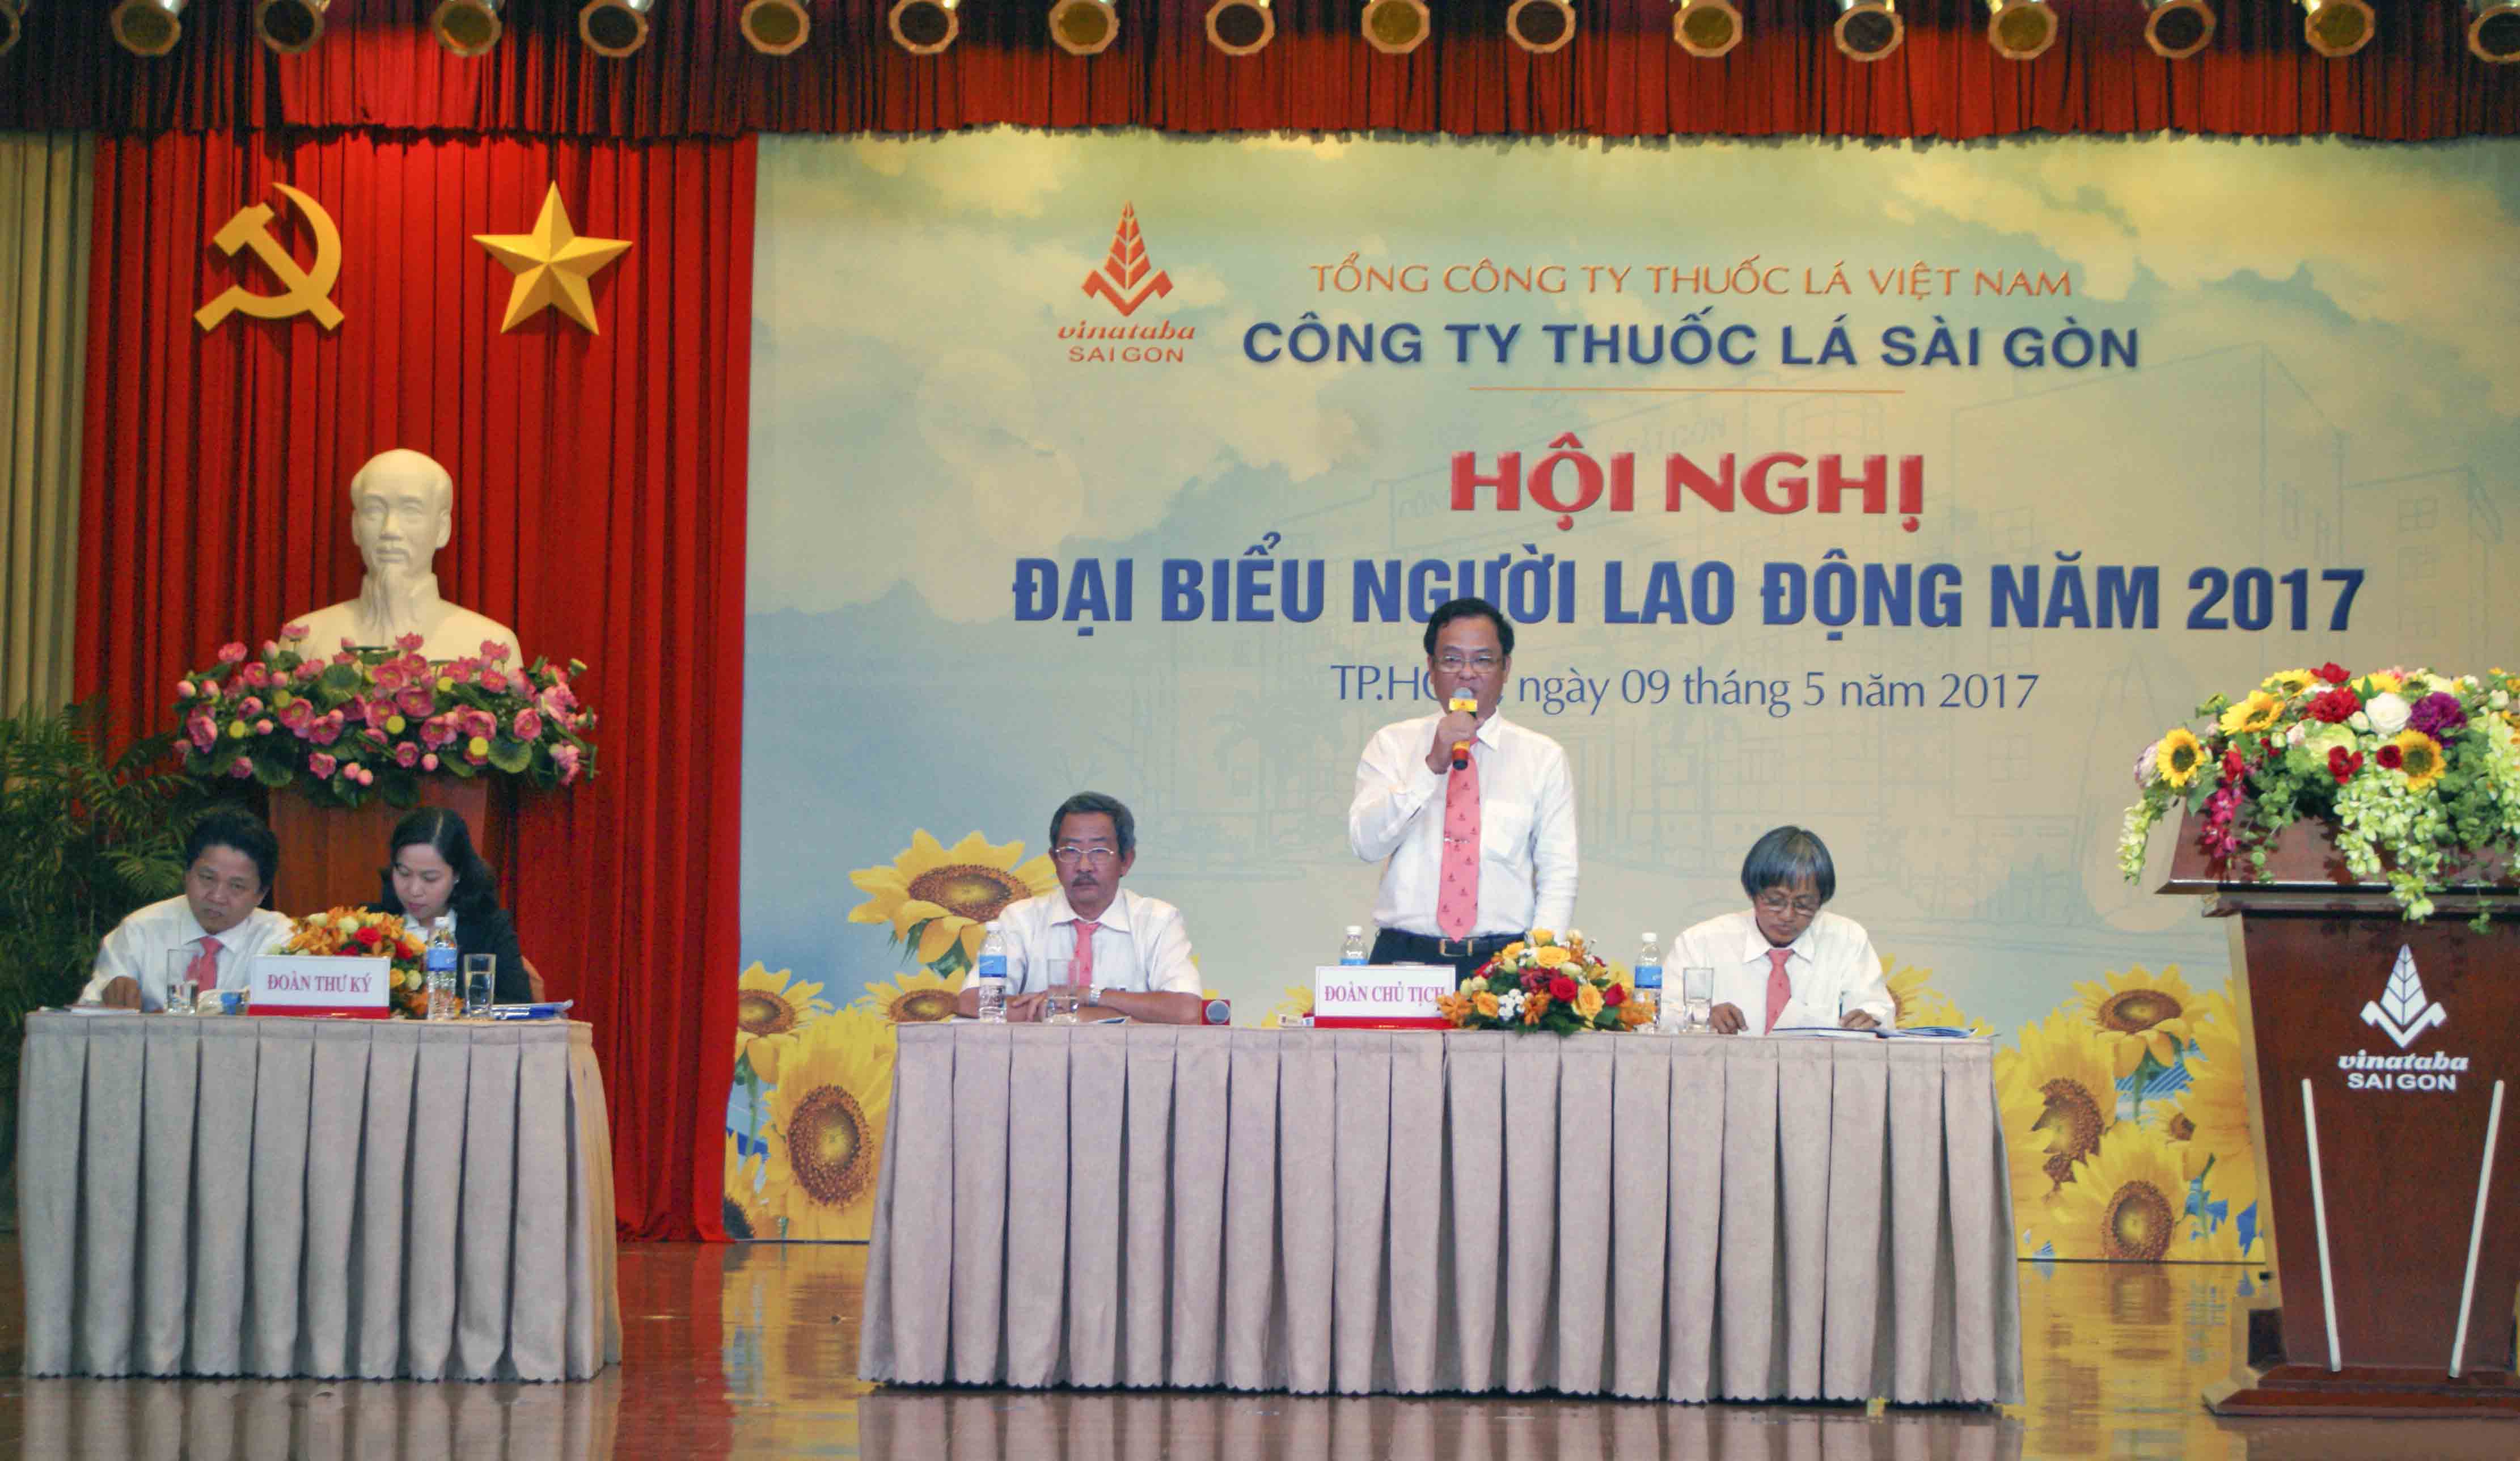 Đ/c Nguyễn Đăng Tiến Chủ tịch Công đoàn phát biểu tại hội nghị